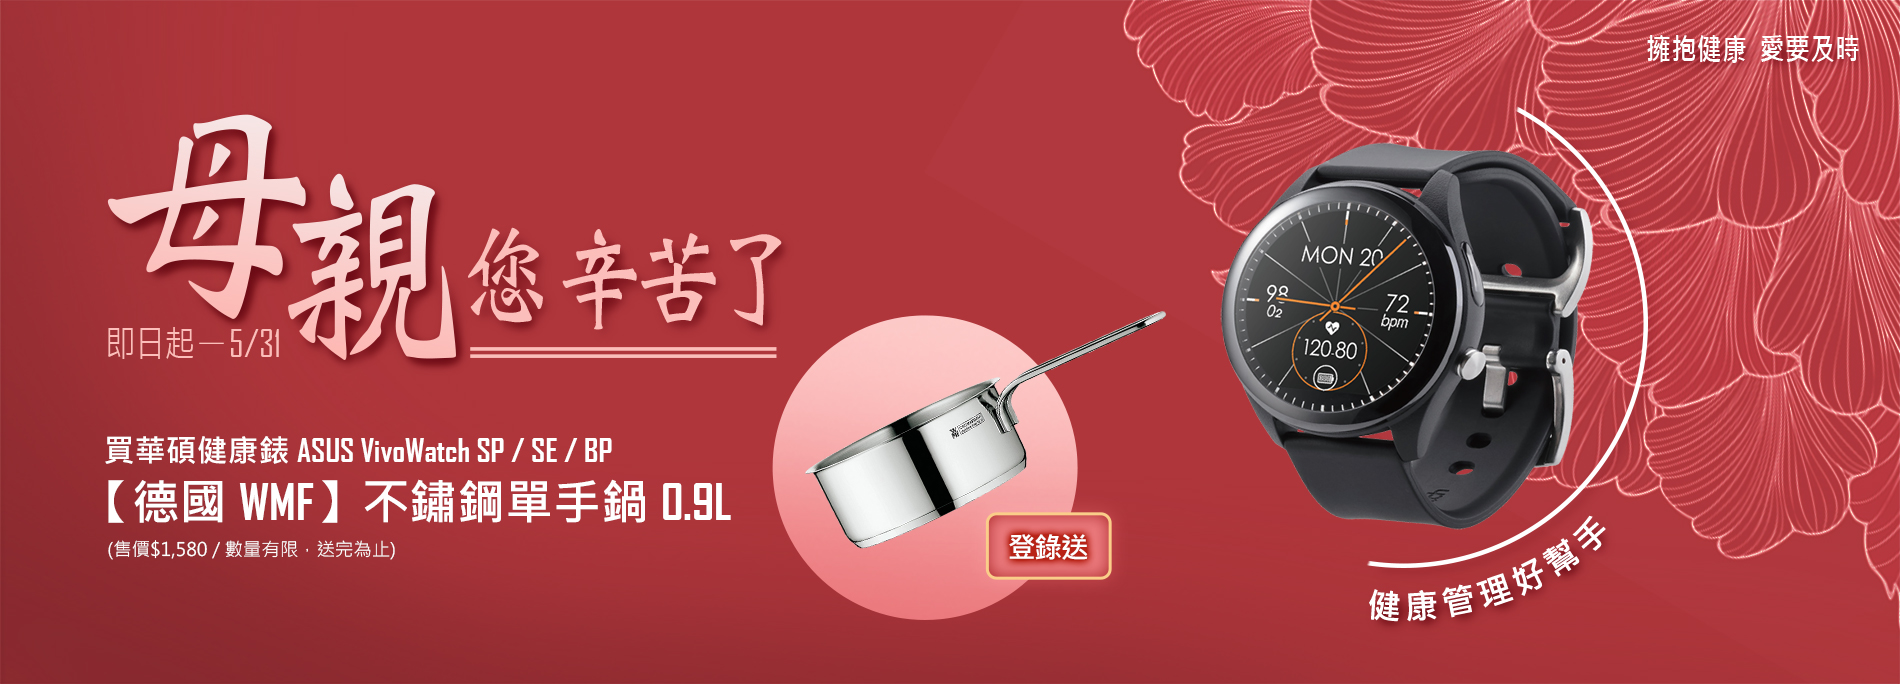 【健康錶心意】活動期間 購買ASUS VivoWatch 全系列健康錶，官網登錄送『WMF不銹鋼單手鍋0.9L 』(數量有限，送完為止)